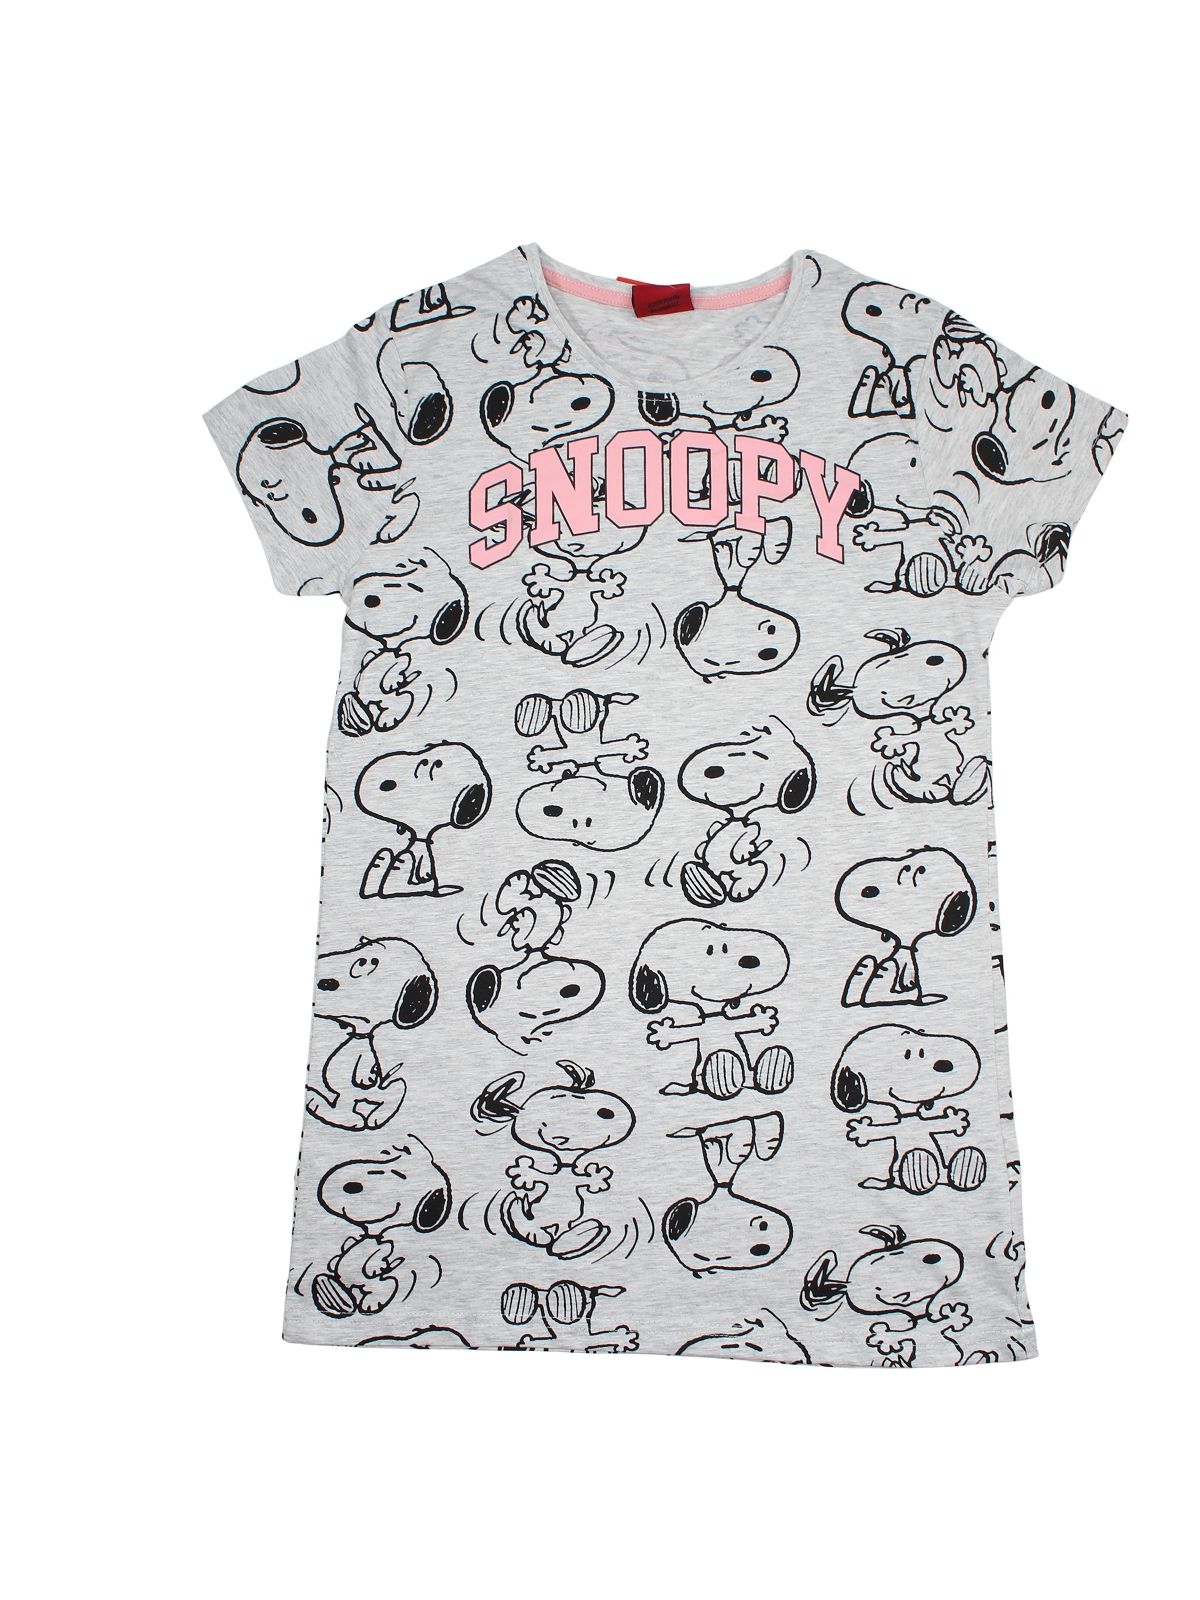 Snoopy pajamas